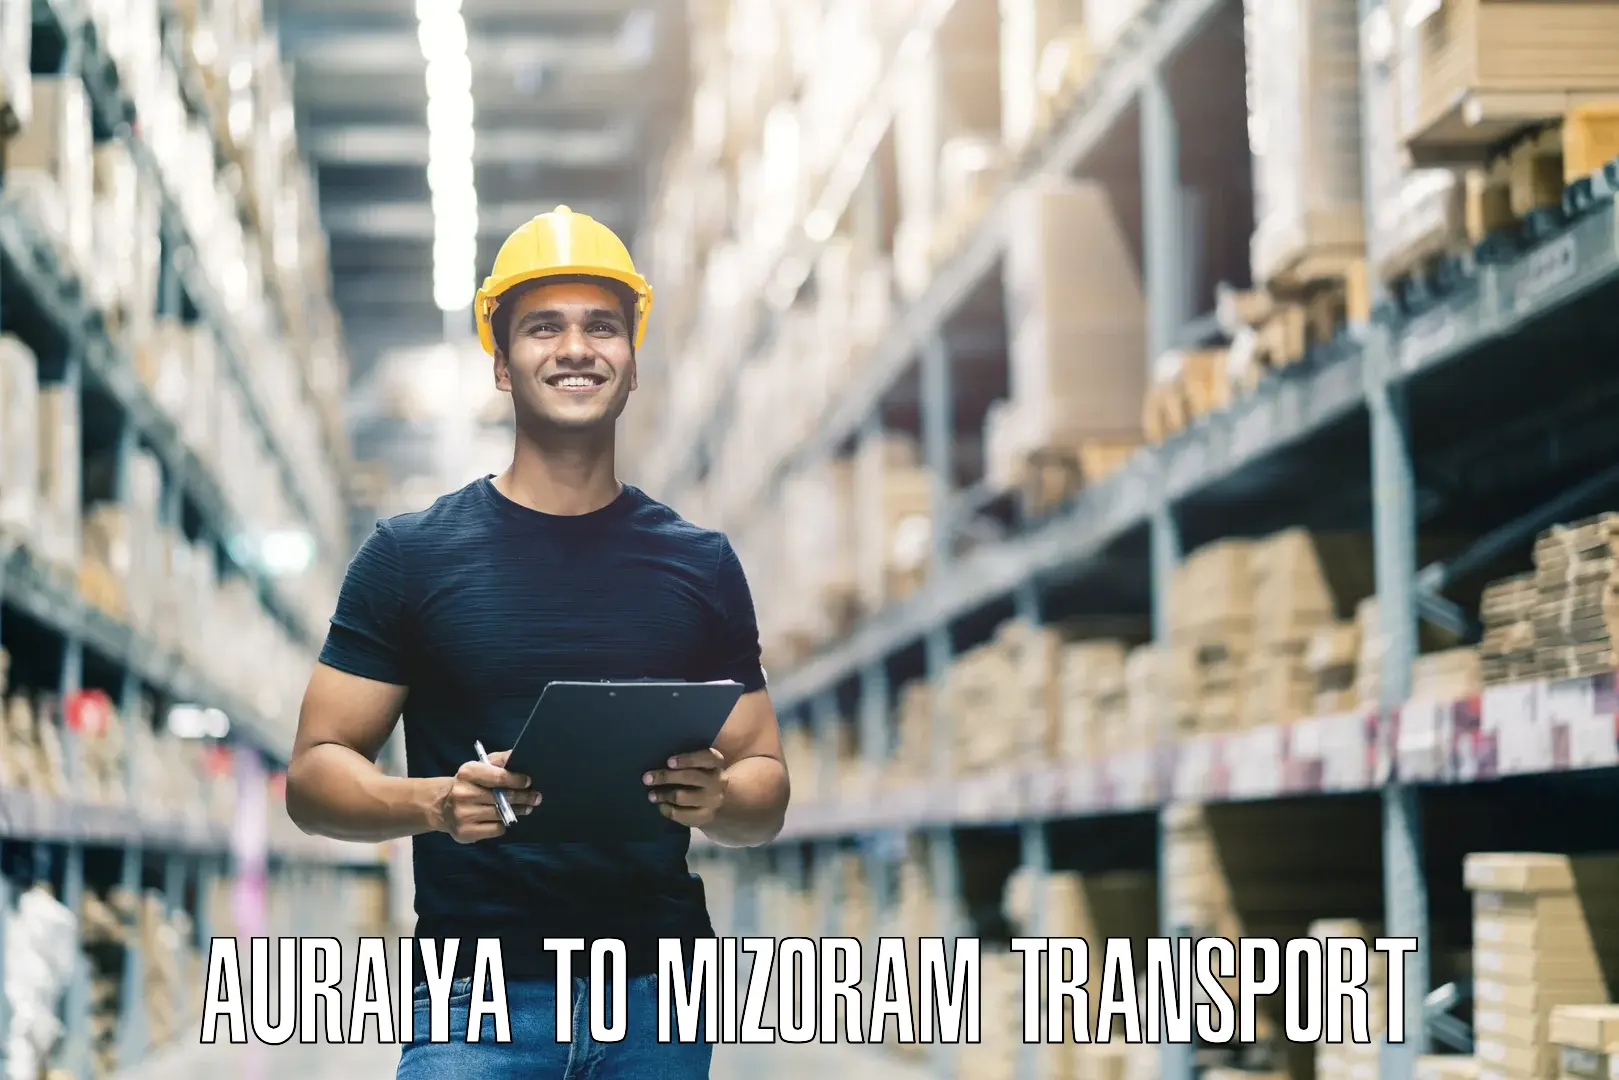 Interstate transport services Auraiya to Aizawl